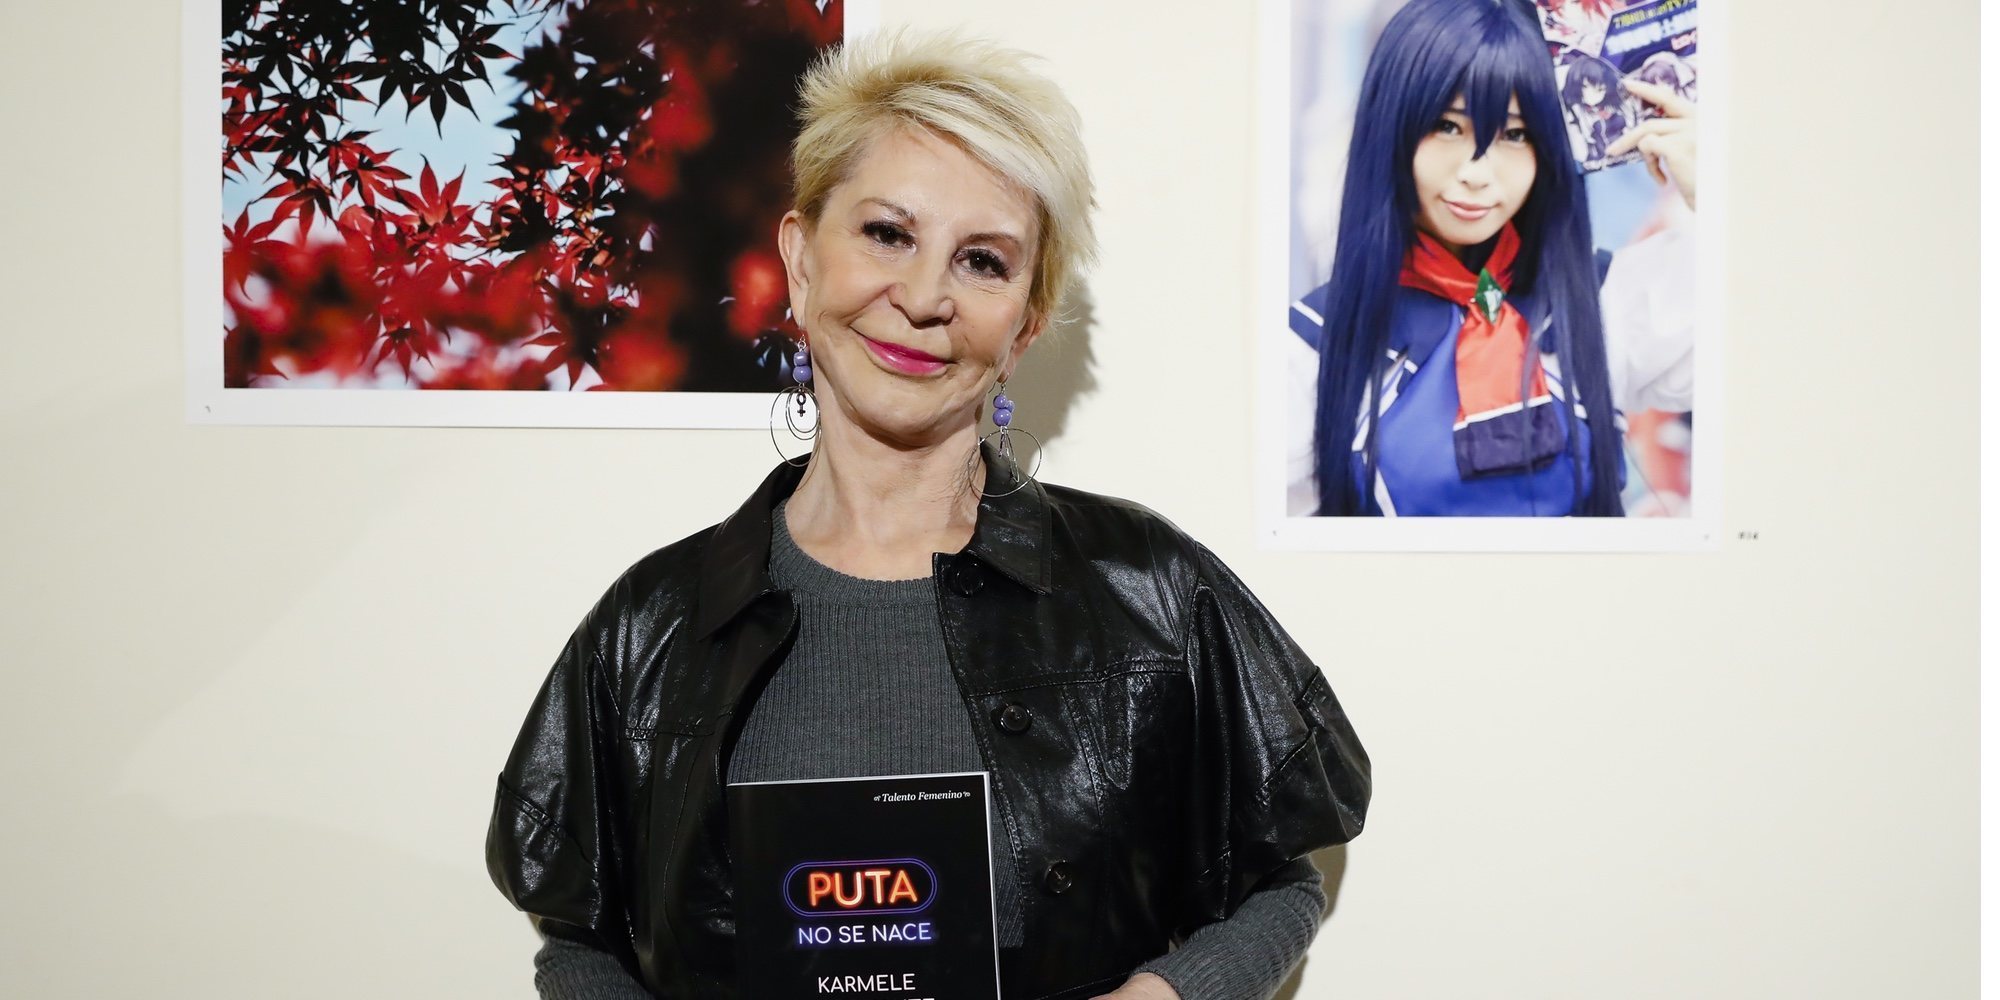 Karmele Marchante presenta 'Puta no se hace' con el apoyo de Manuela Carmena